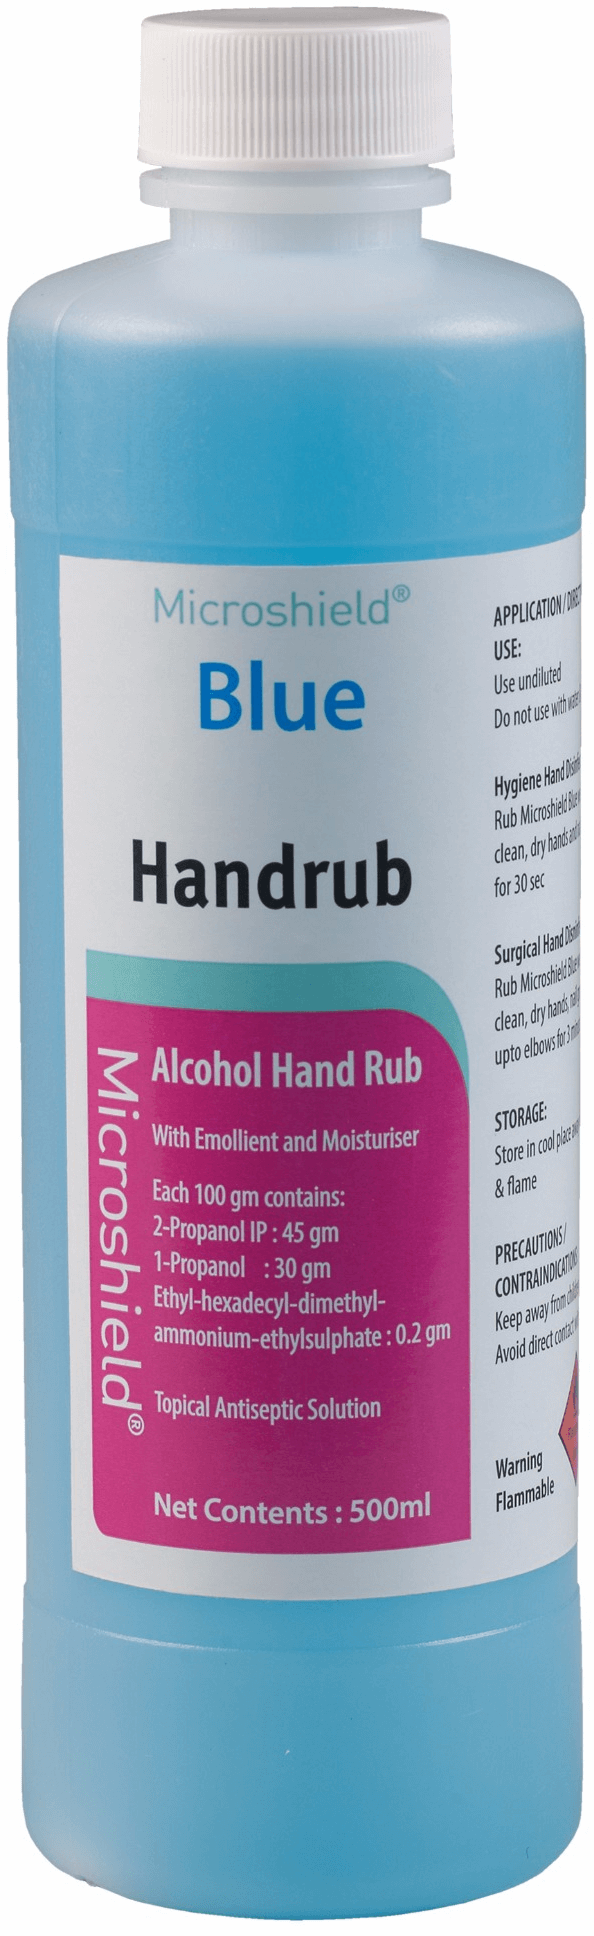 Microshield Blue Handrub